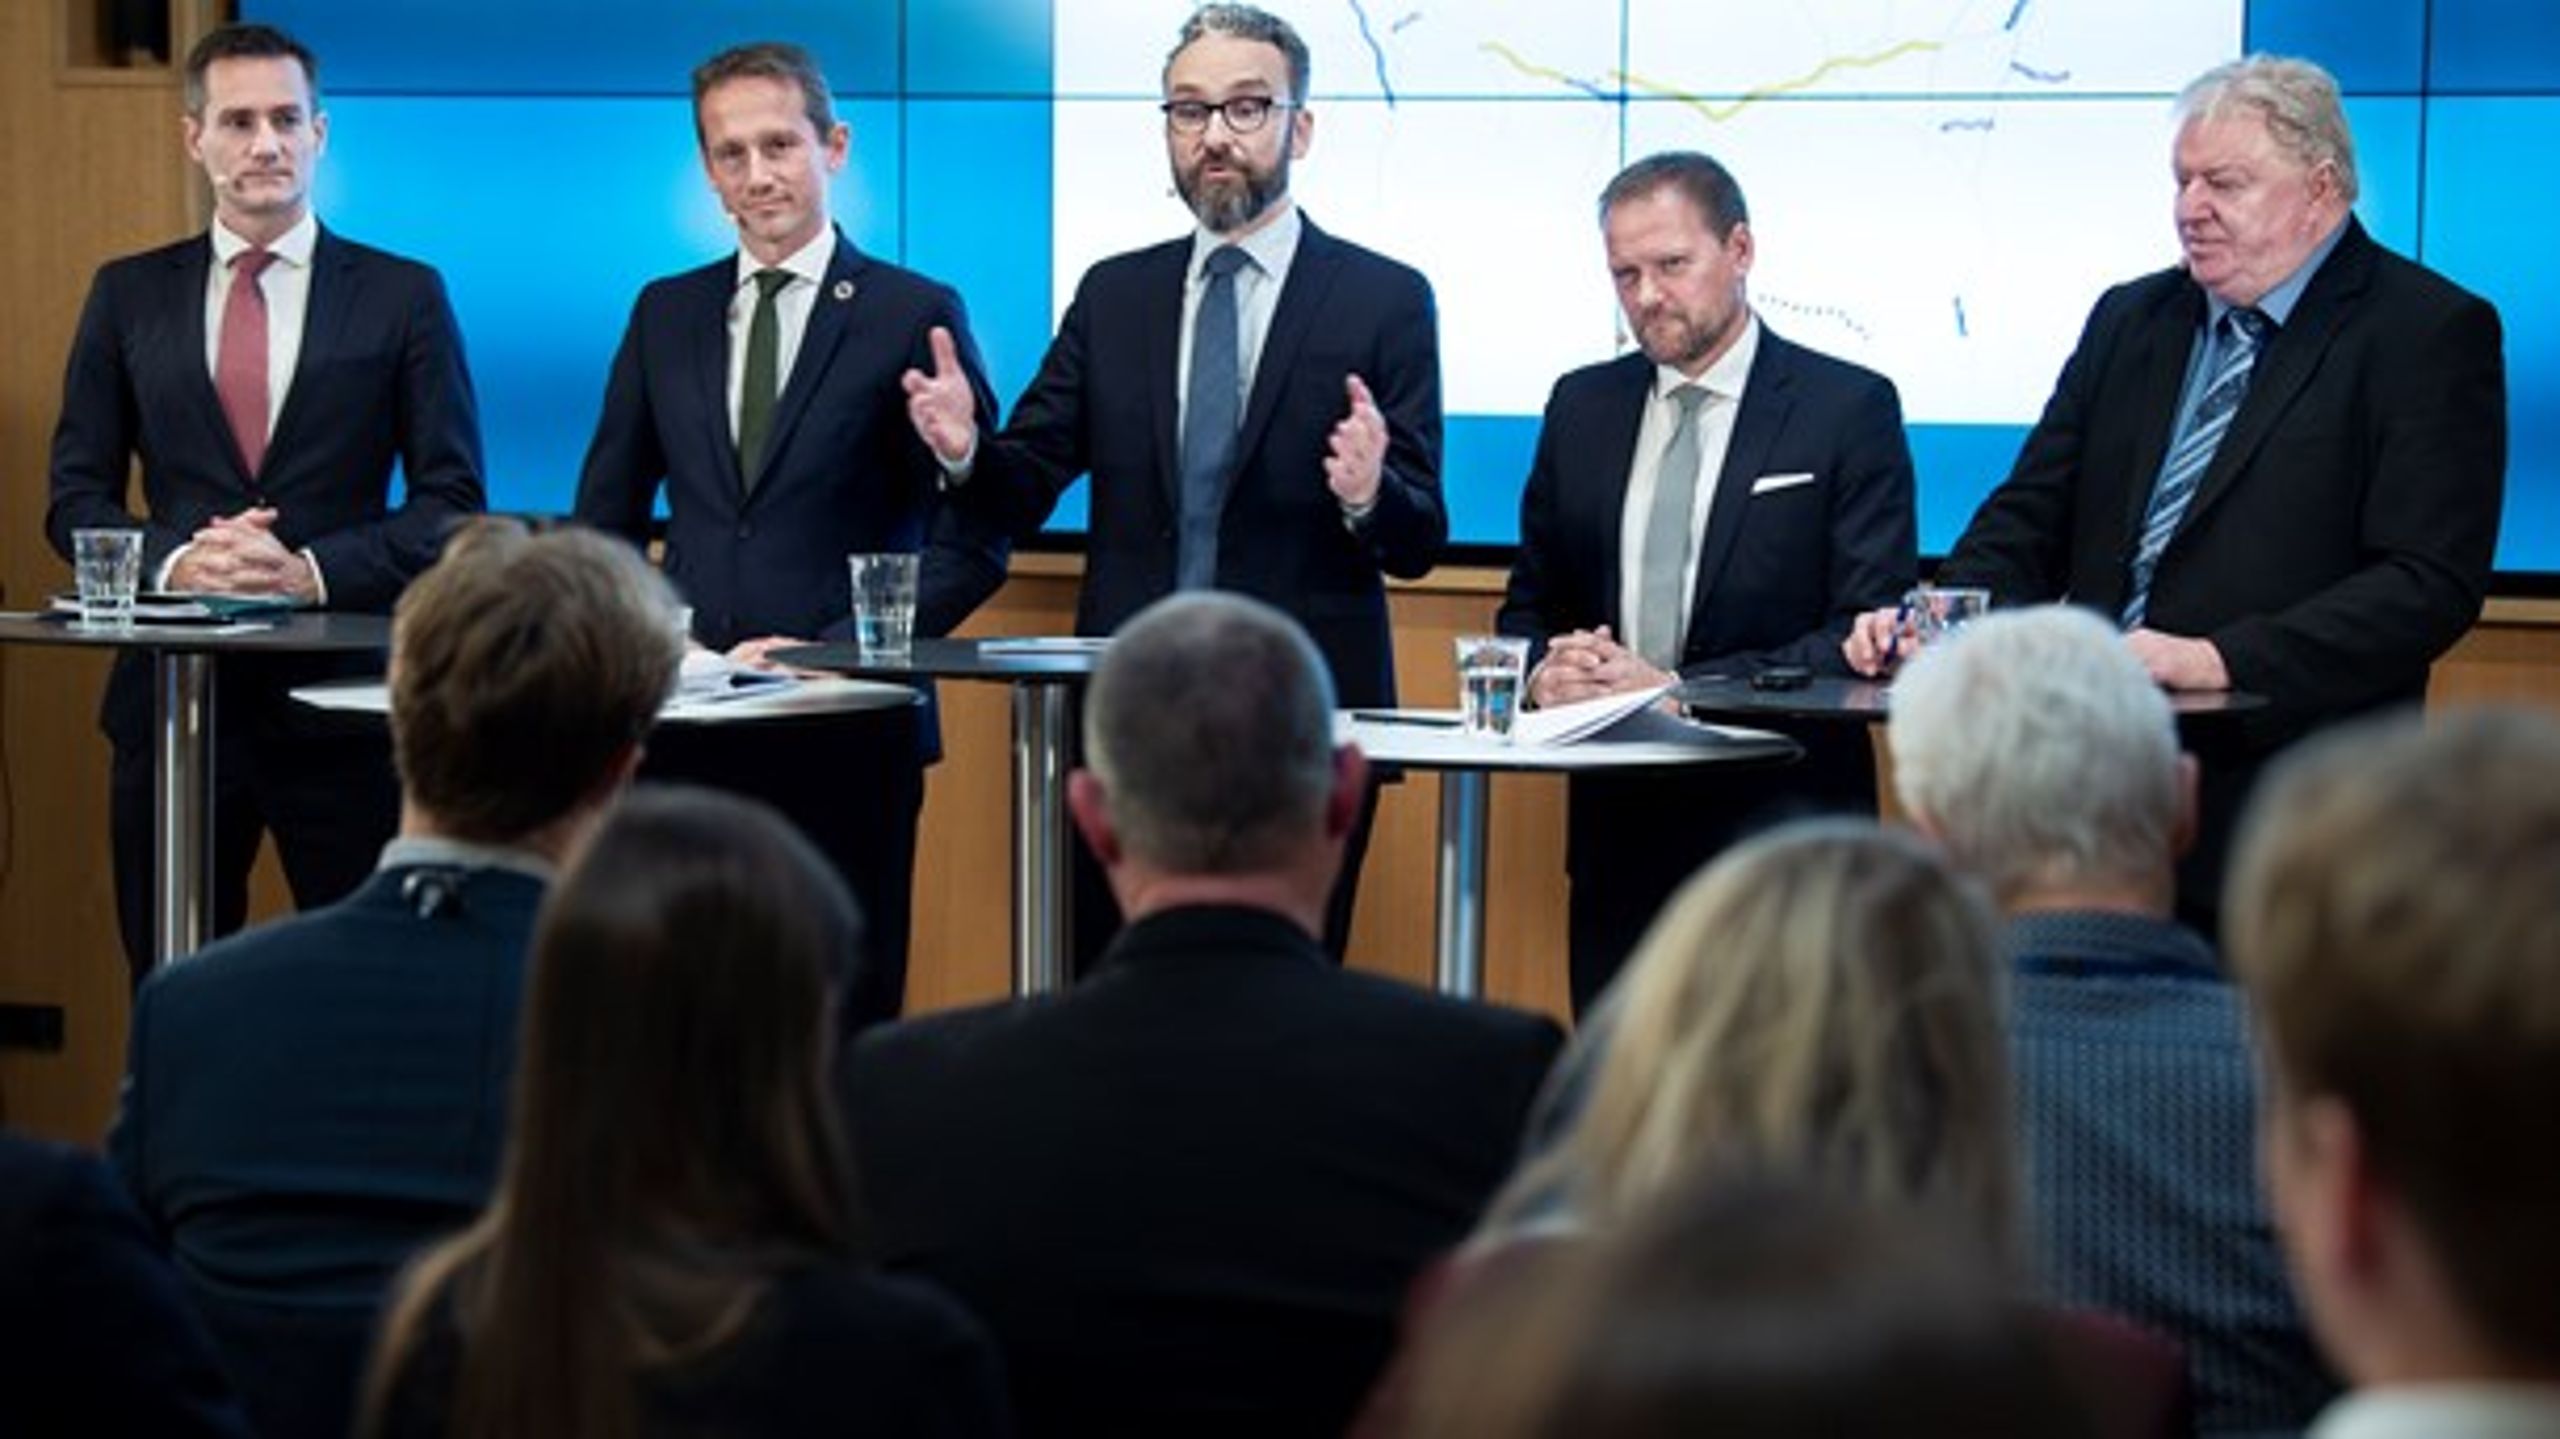 Regeringen og Dansk Folkepartis infrastrukturplan viser endnu engang, at regeringen ikke har det lange sigte for øje, skriver Henning Hylledal (EL).